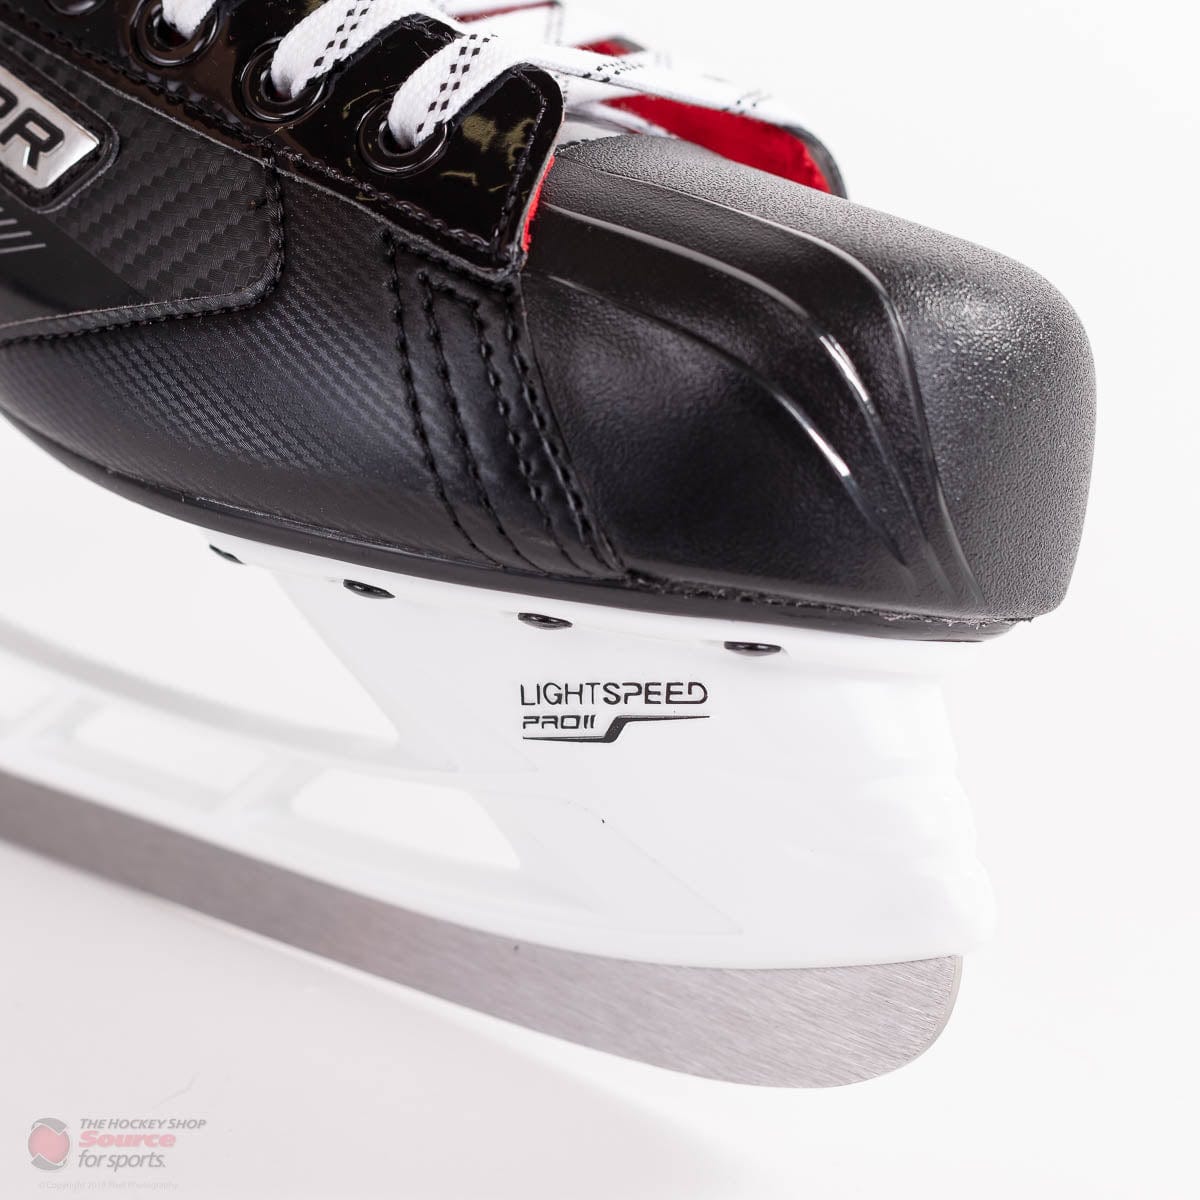 Bauer Vapor X2.5 Senior Hockey Skates